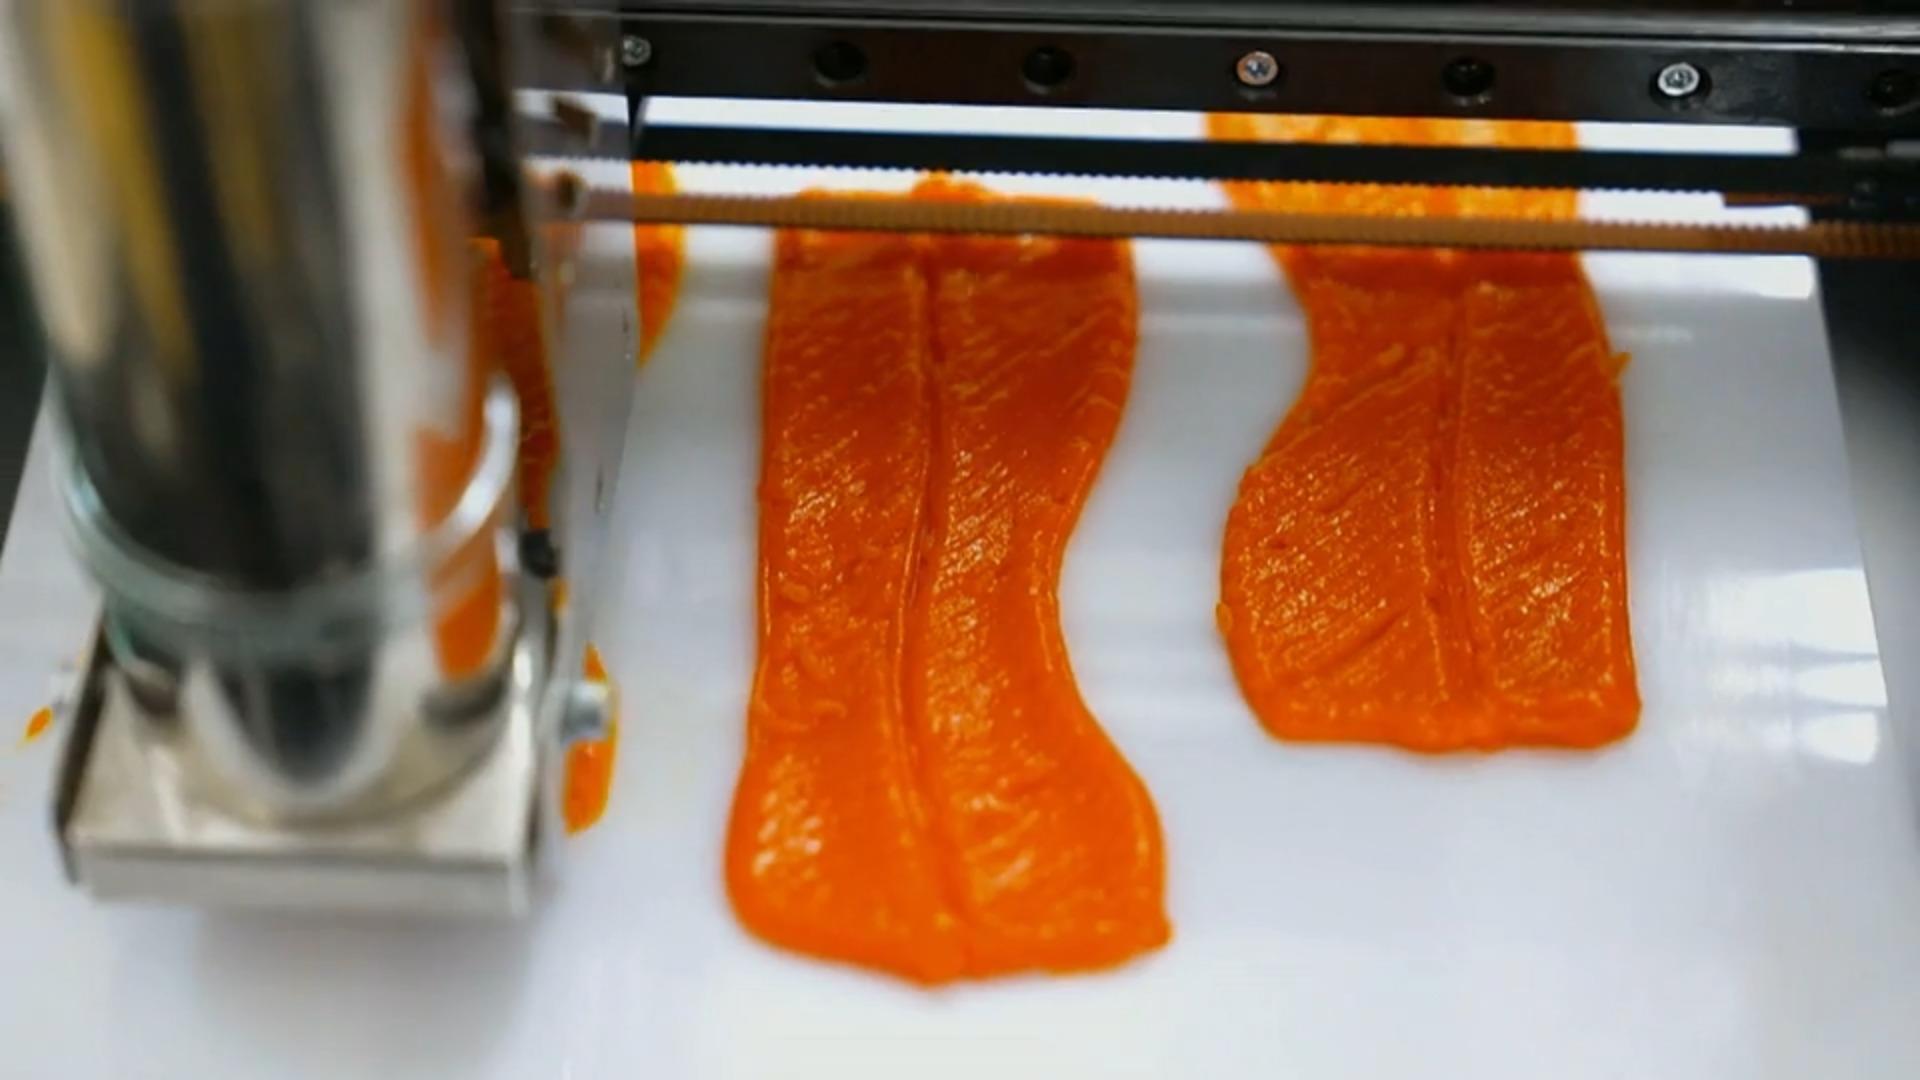 So schmeckt der Lachs aus dem 3D-Drucker Lachs vegan?